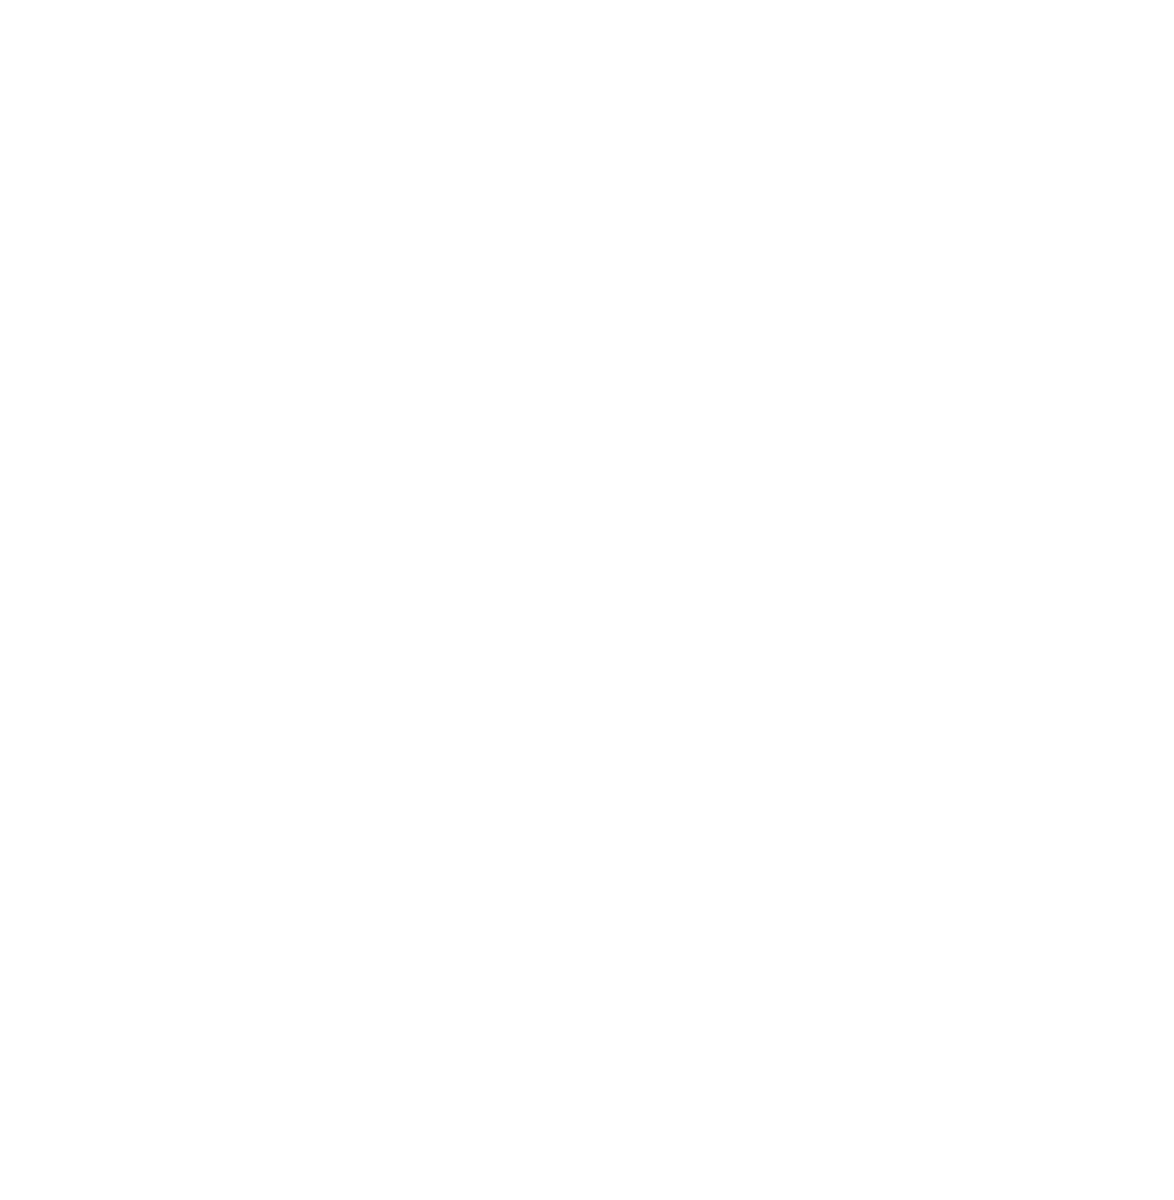 The Elaine logo